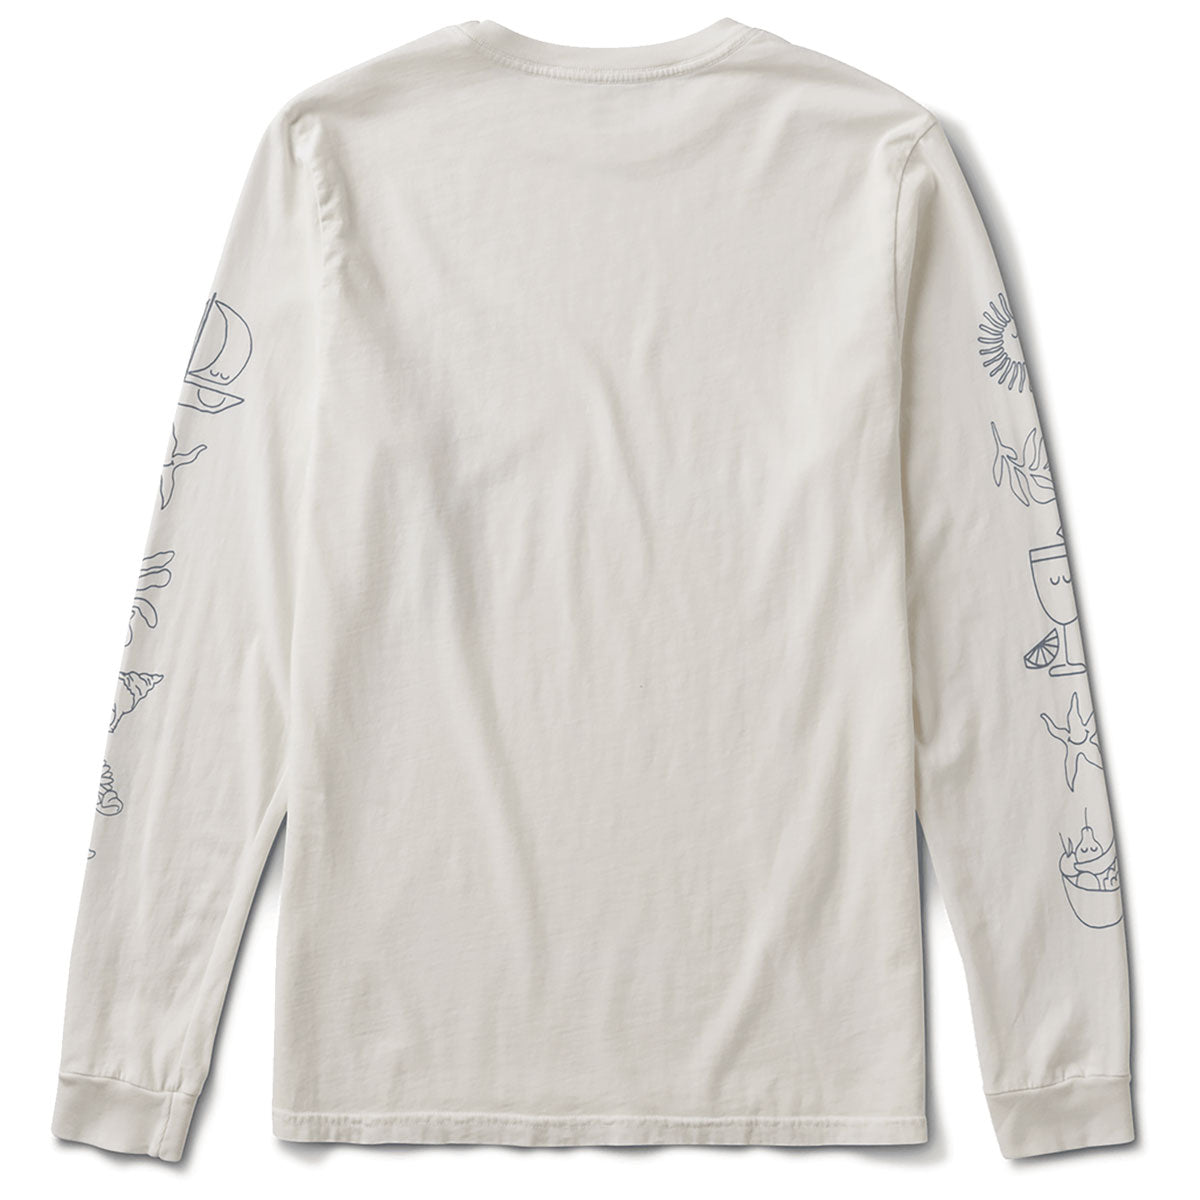 Roark Sole Splendente Long Sleeve T-Shirt - Off White image 5